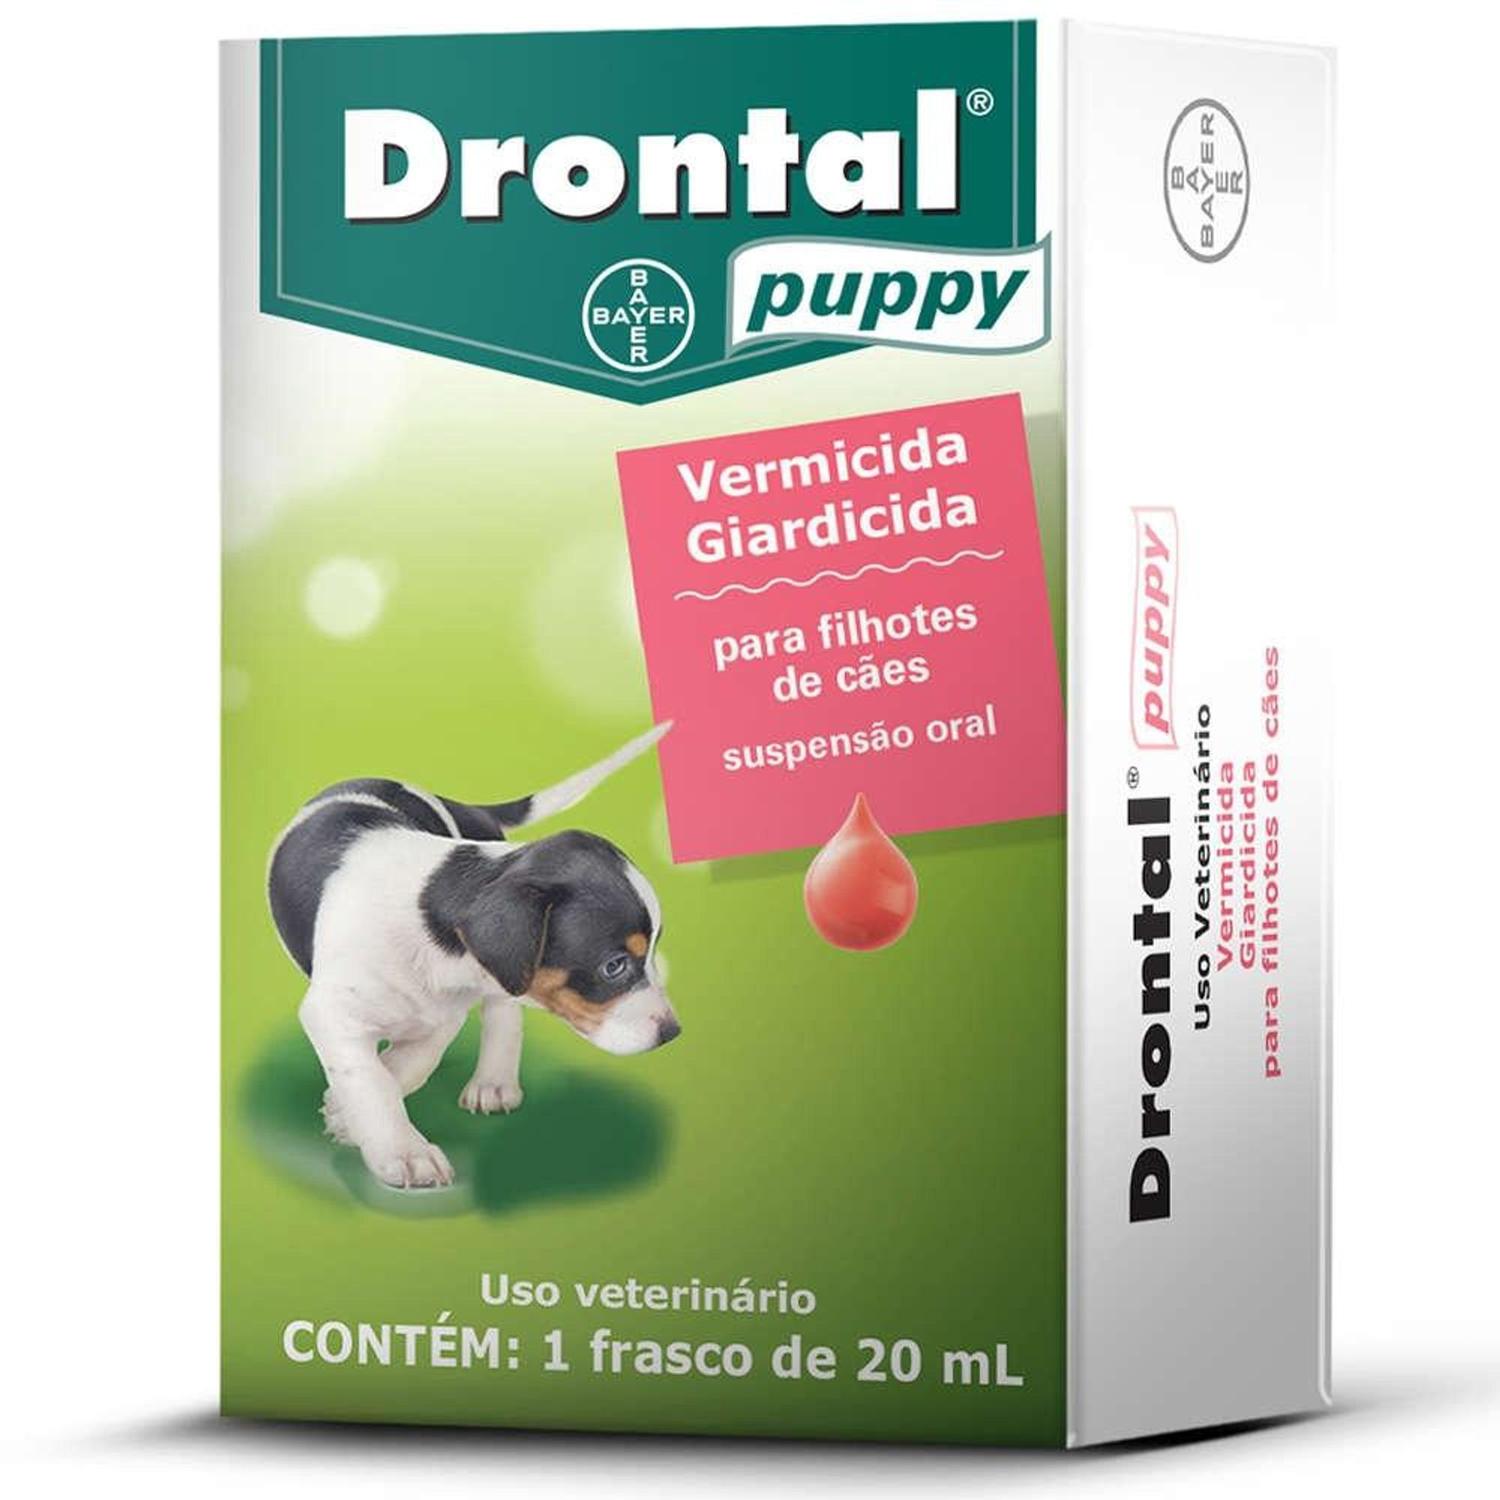 Vermífugo Drontal Puppy Suspensão 20ml Bayer Trata Giardia